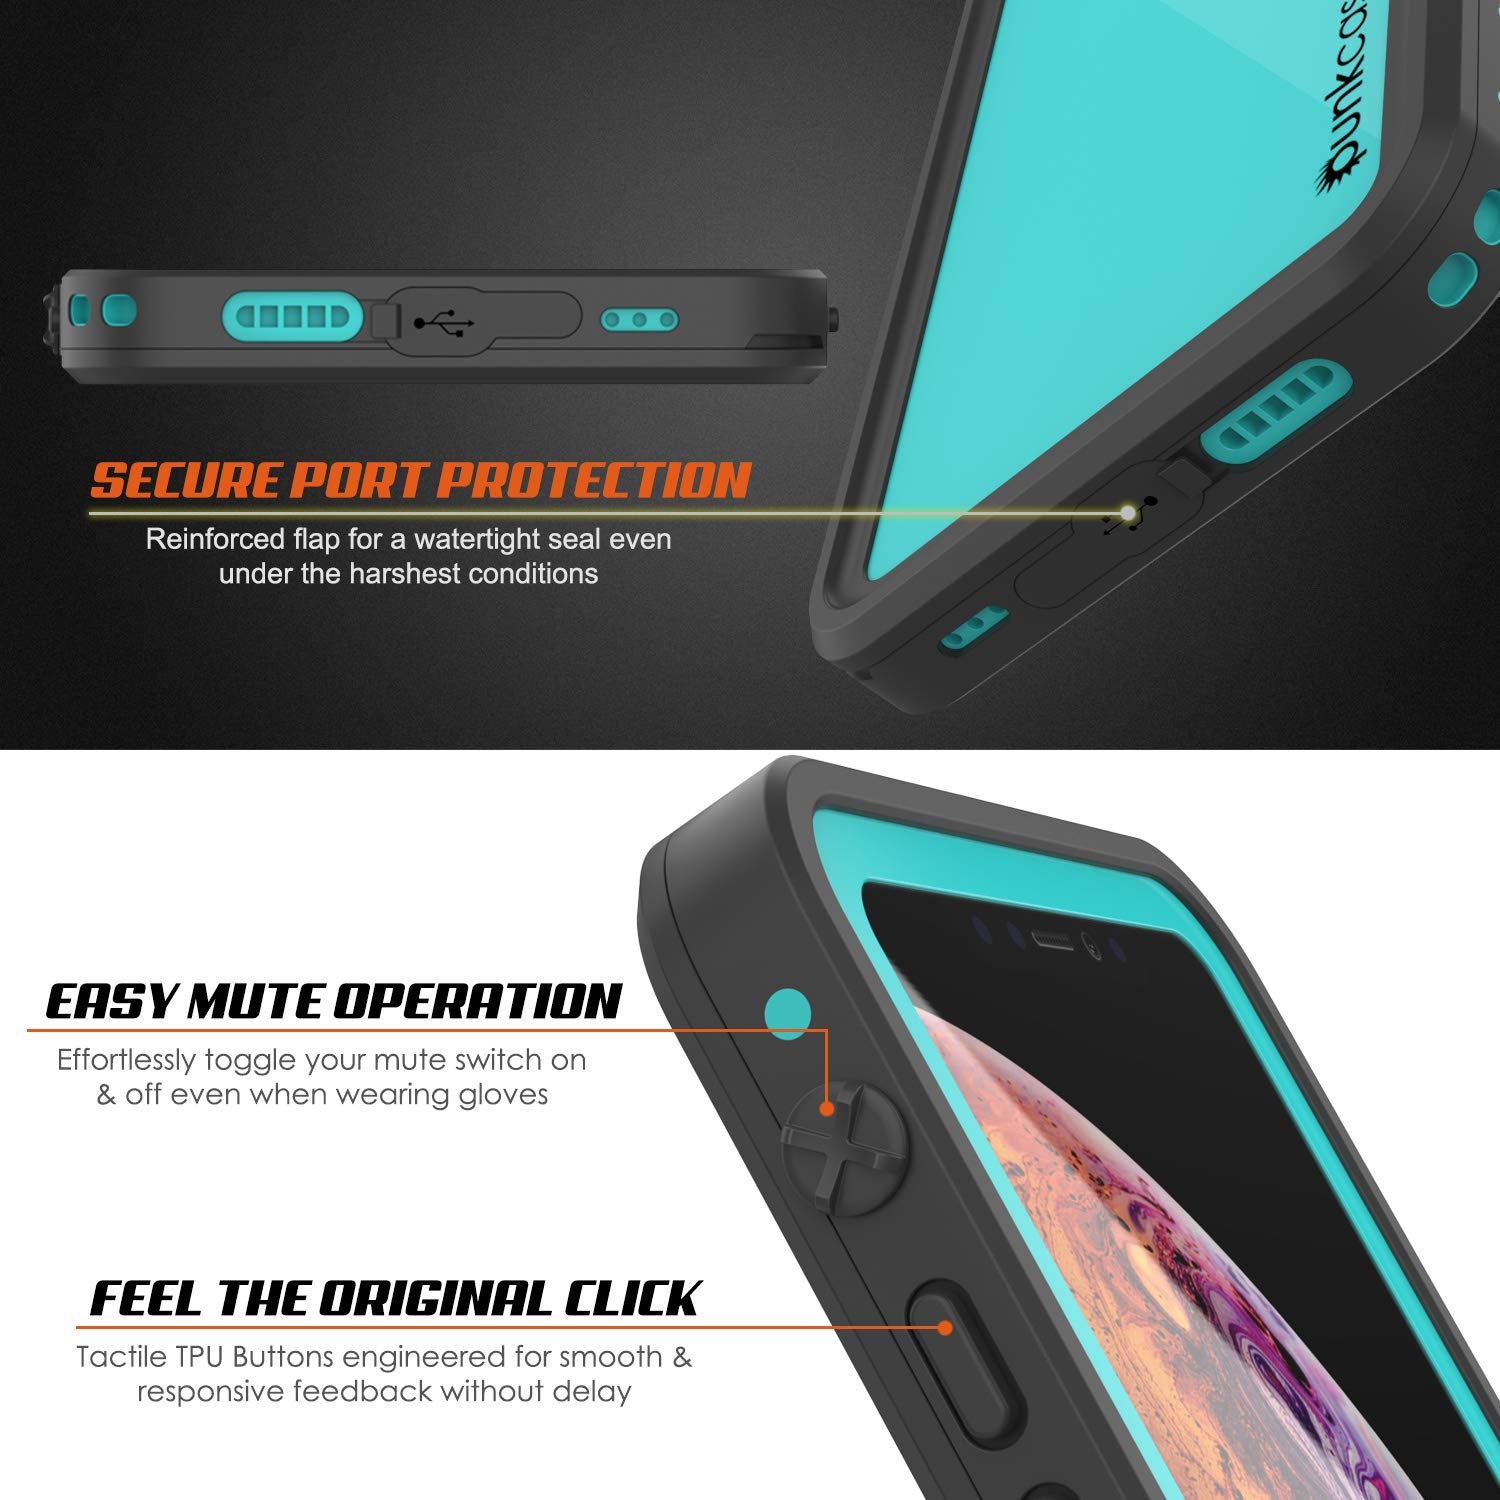 iPhone XS Max Waterproof IP68 Case, Punkcase [Teal] [StudStar Series] [Slim Fit] [Dirtproof]